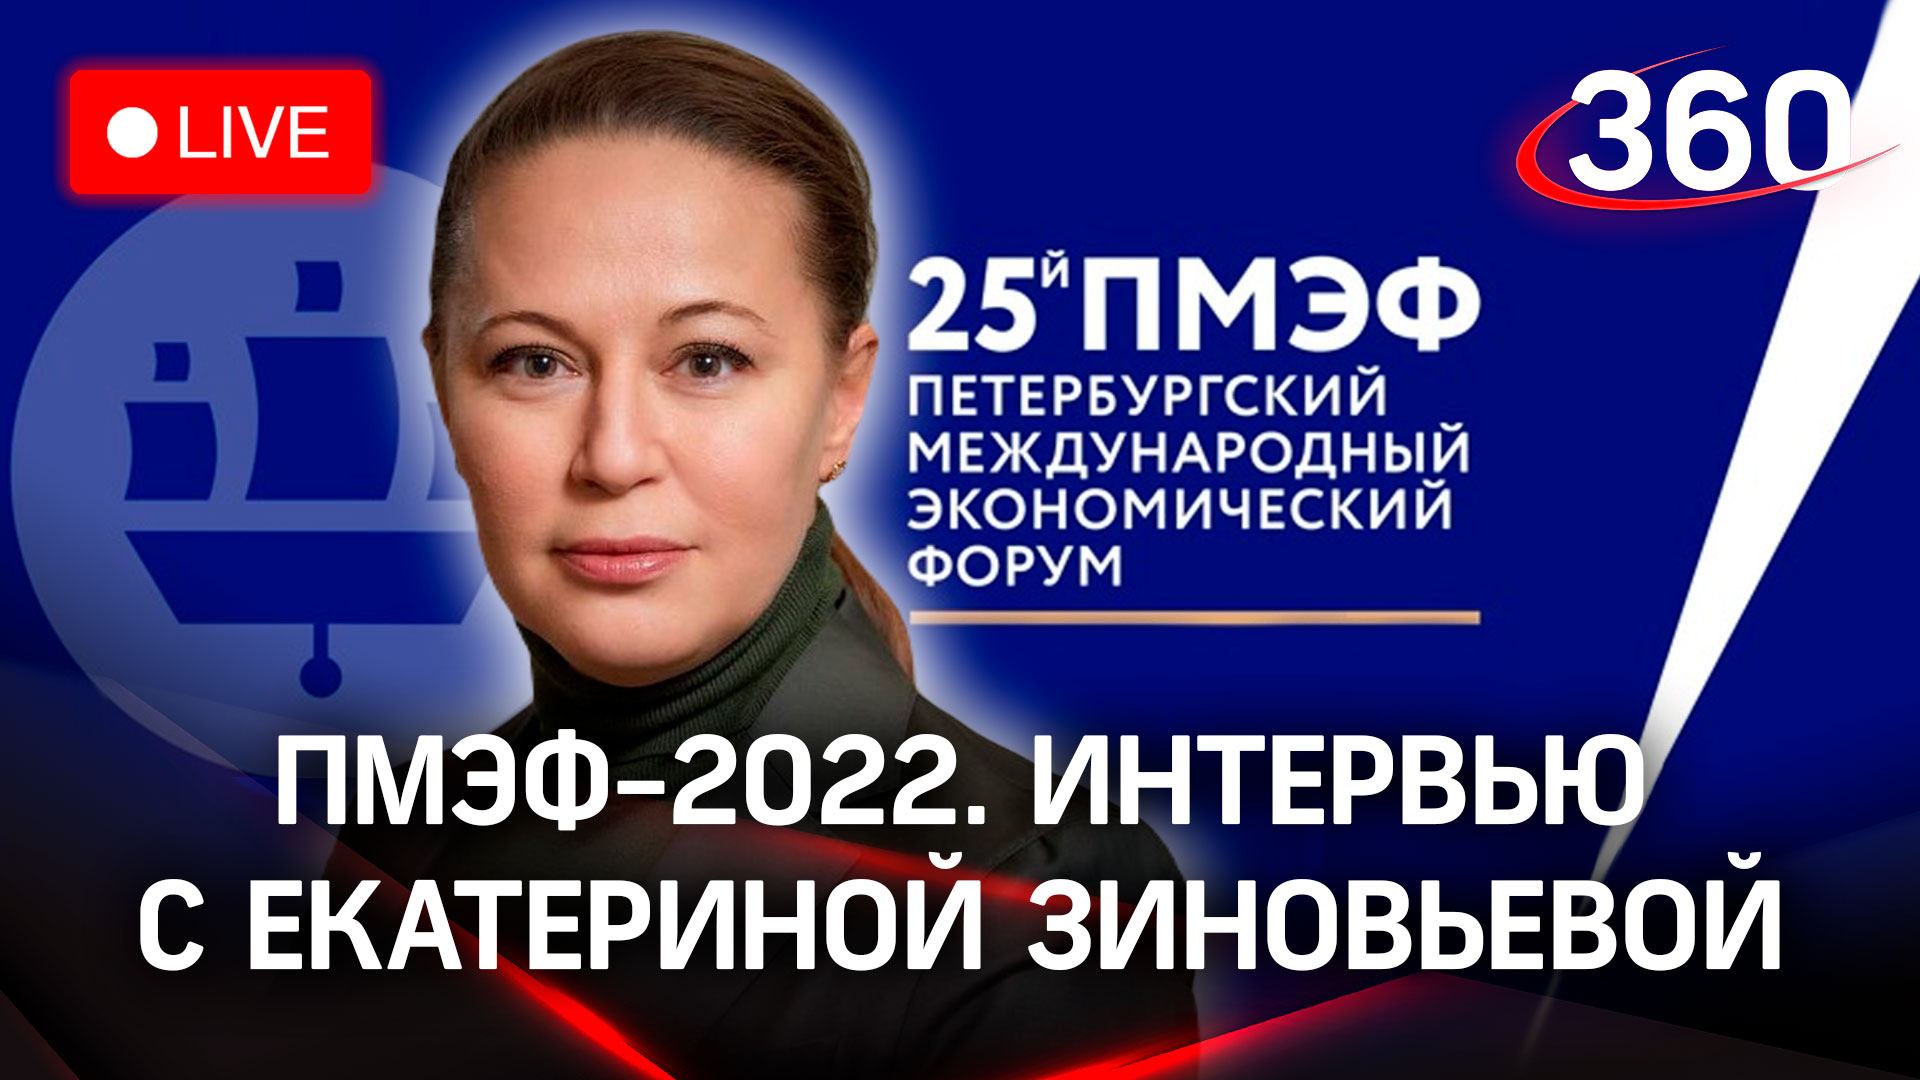 ПМЭФ-2022: интервью с Екатериной Зиновьевой, заместителем председателя правительства МО